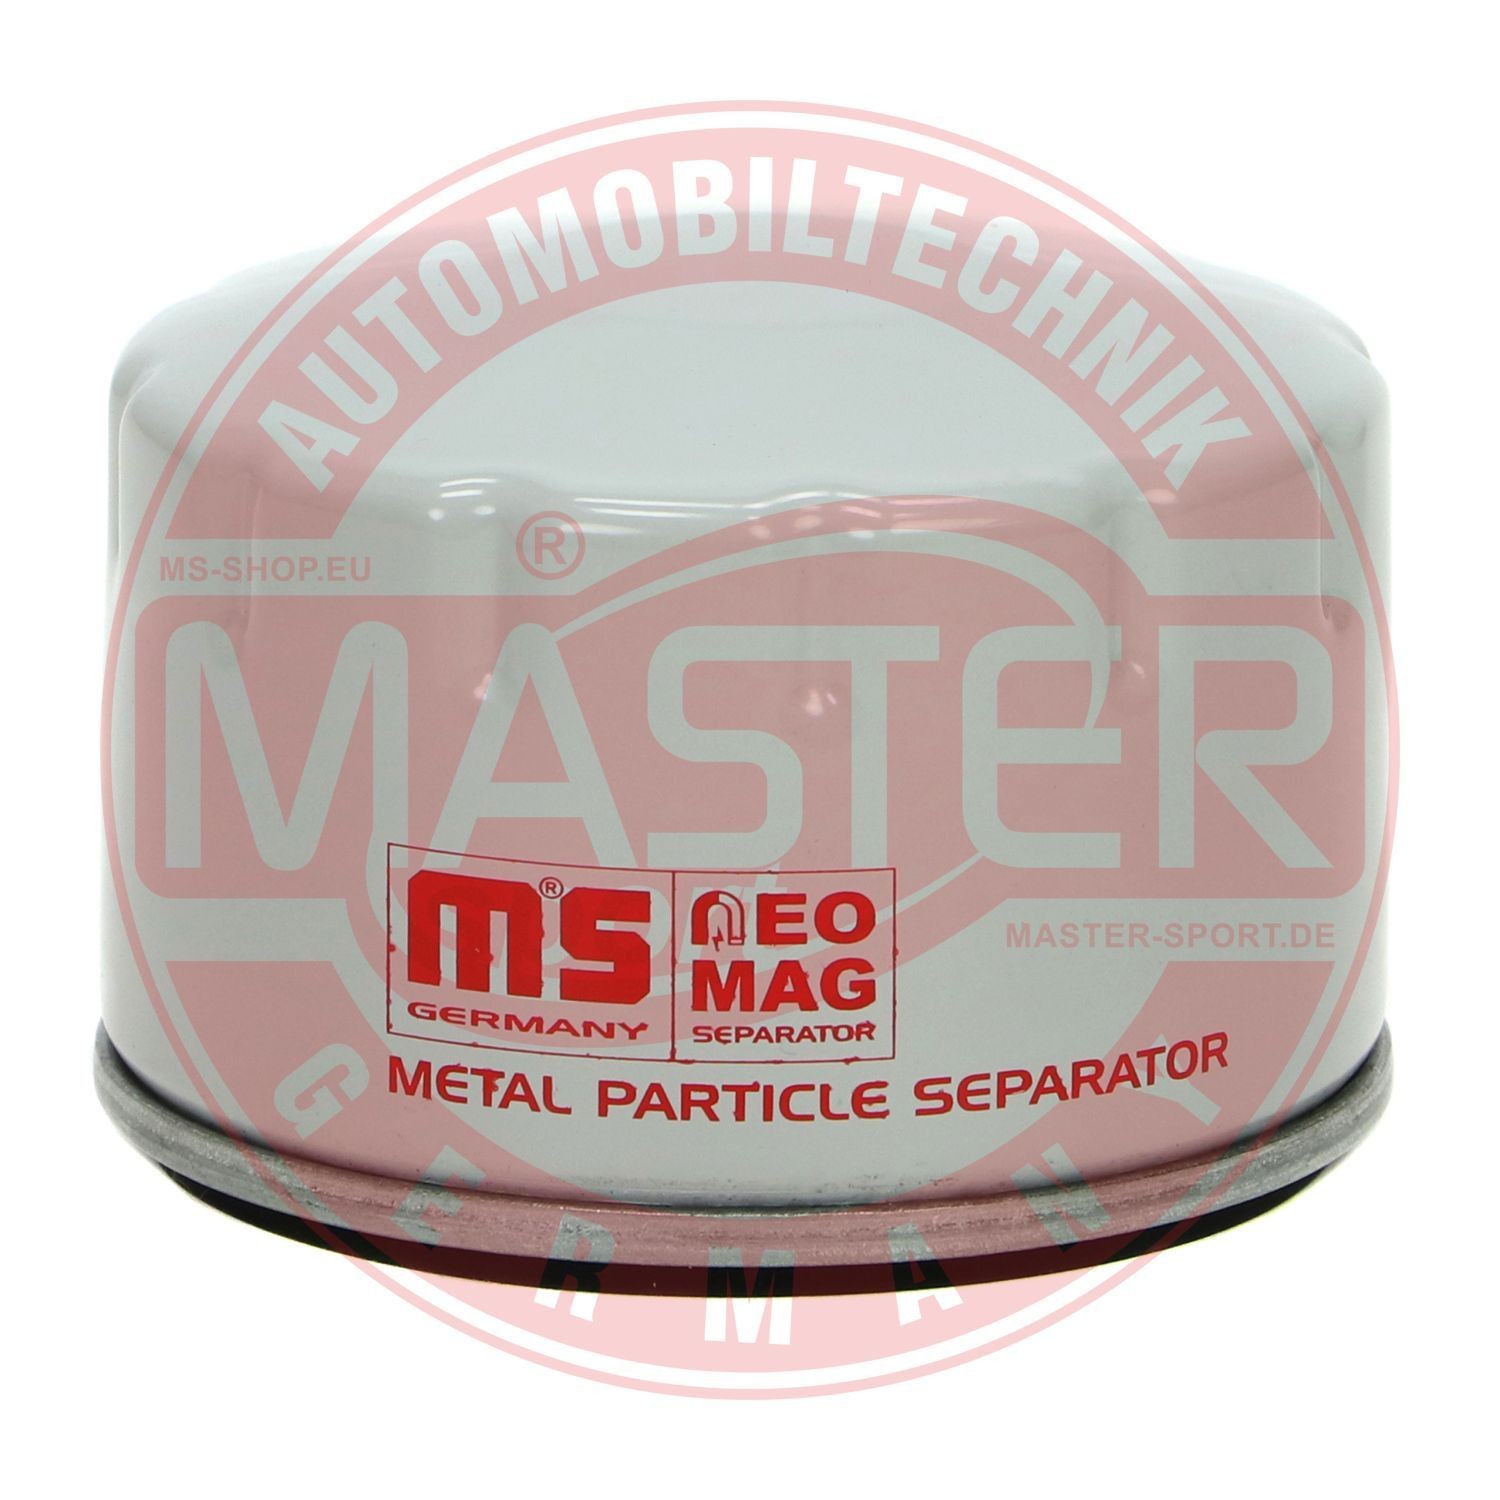 MASTER-SPORT Motorölfilter ARO 75/3-MG-OF-PCS-MS in Original Qualität